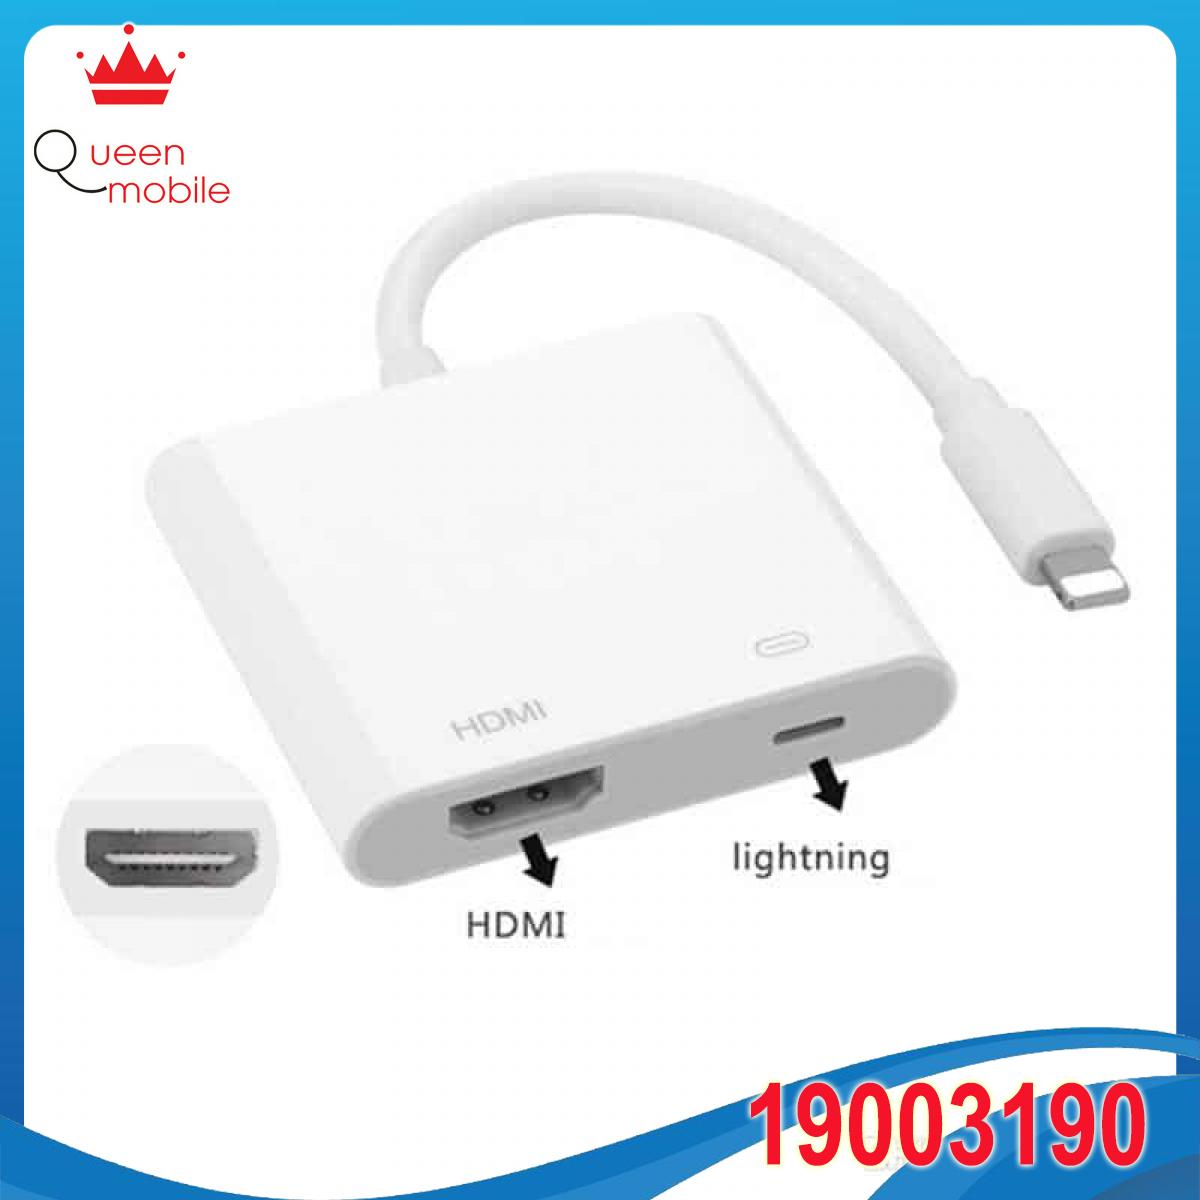 Cáp lighting to HDMI - Apple Lightning Digital AV Adapter 